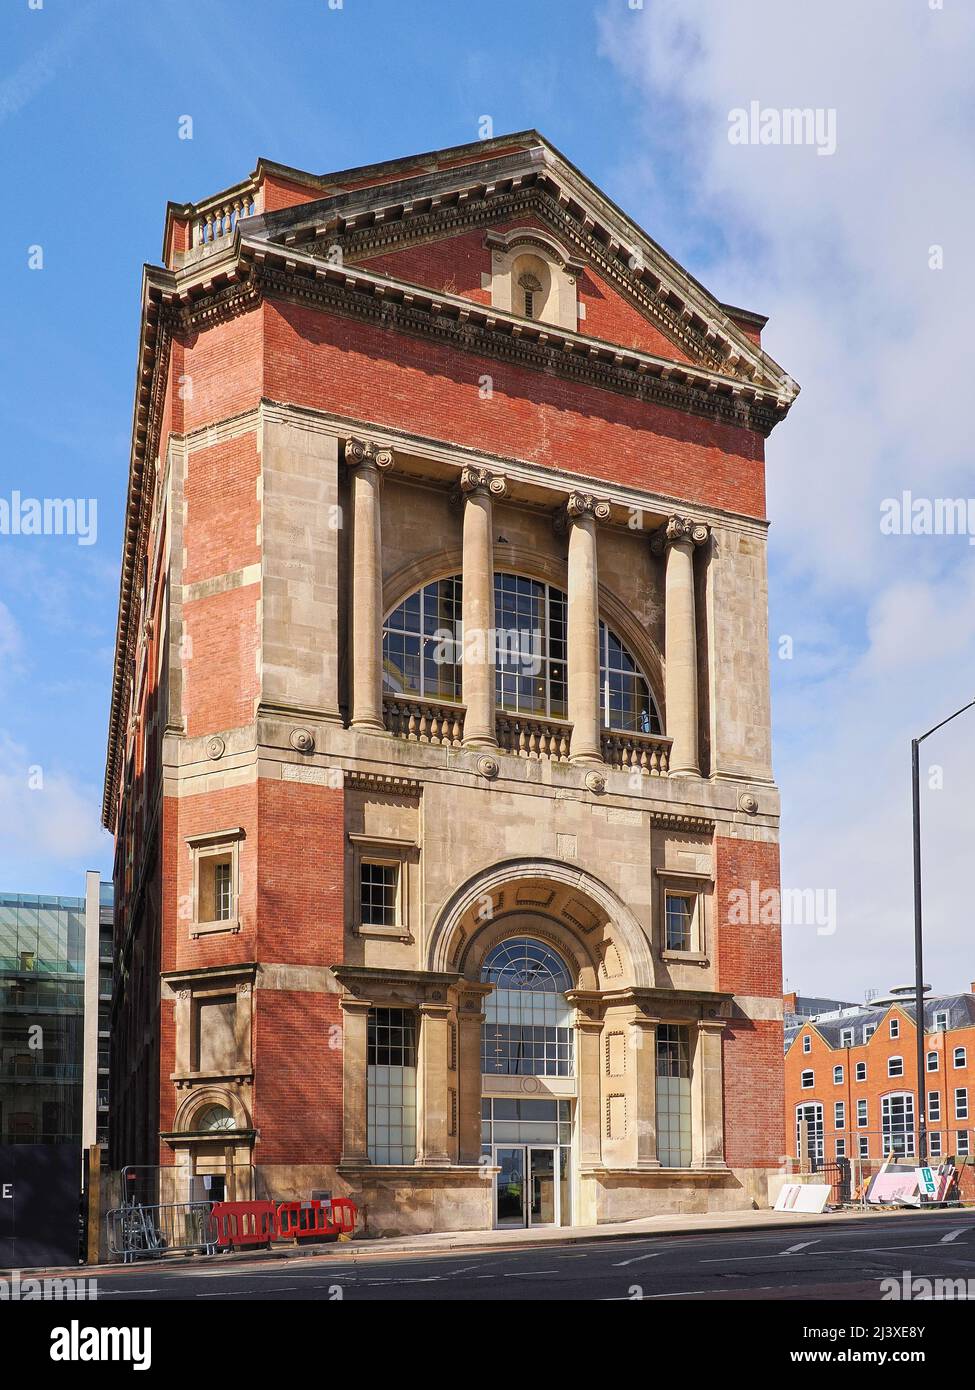 Ancien bâtiment de la centrale électrique Tramways construit dans le style néoclassique par l'architecte William Curtis Green dans le centre-ville de Bristol au Royaume-Uni Banque D'Images